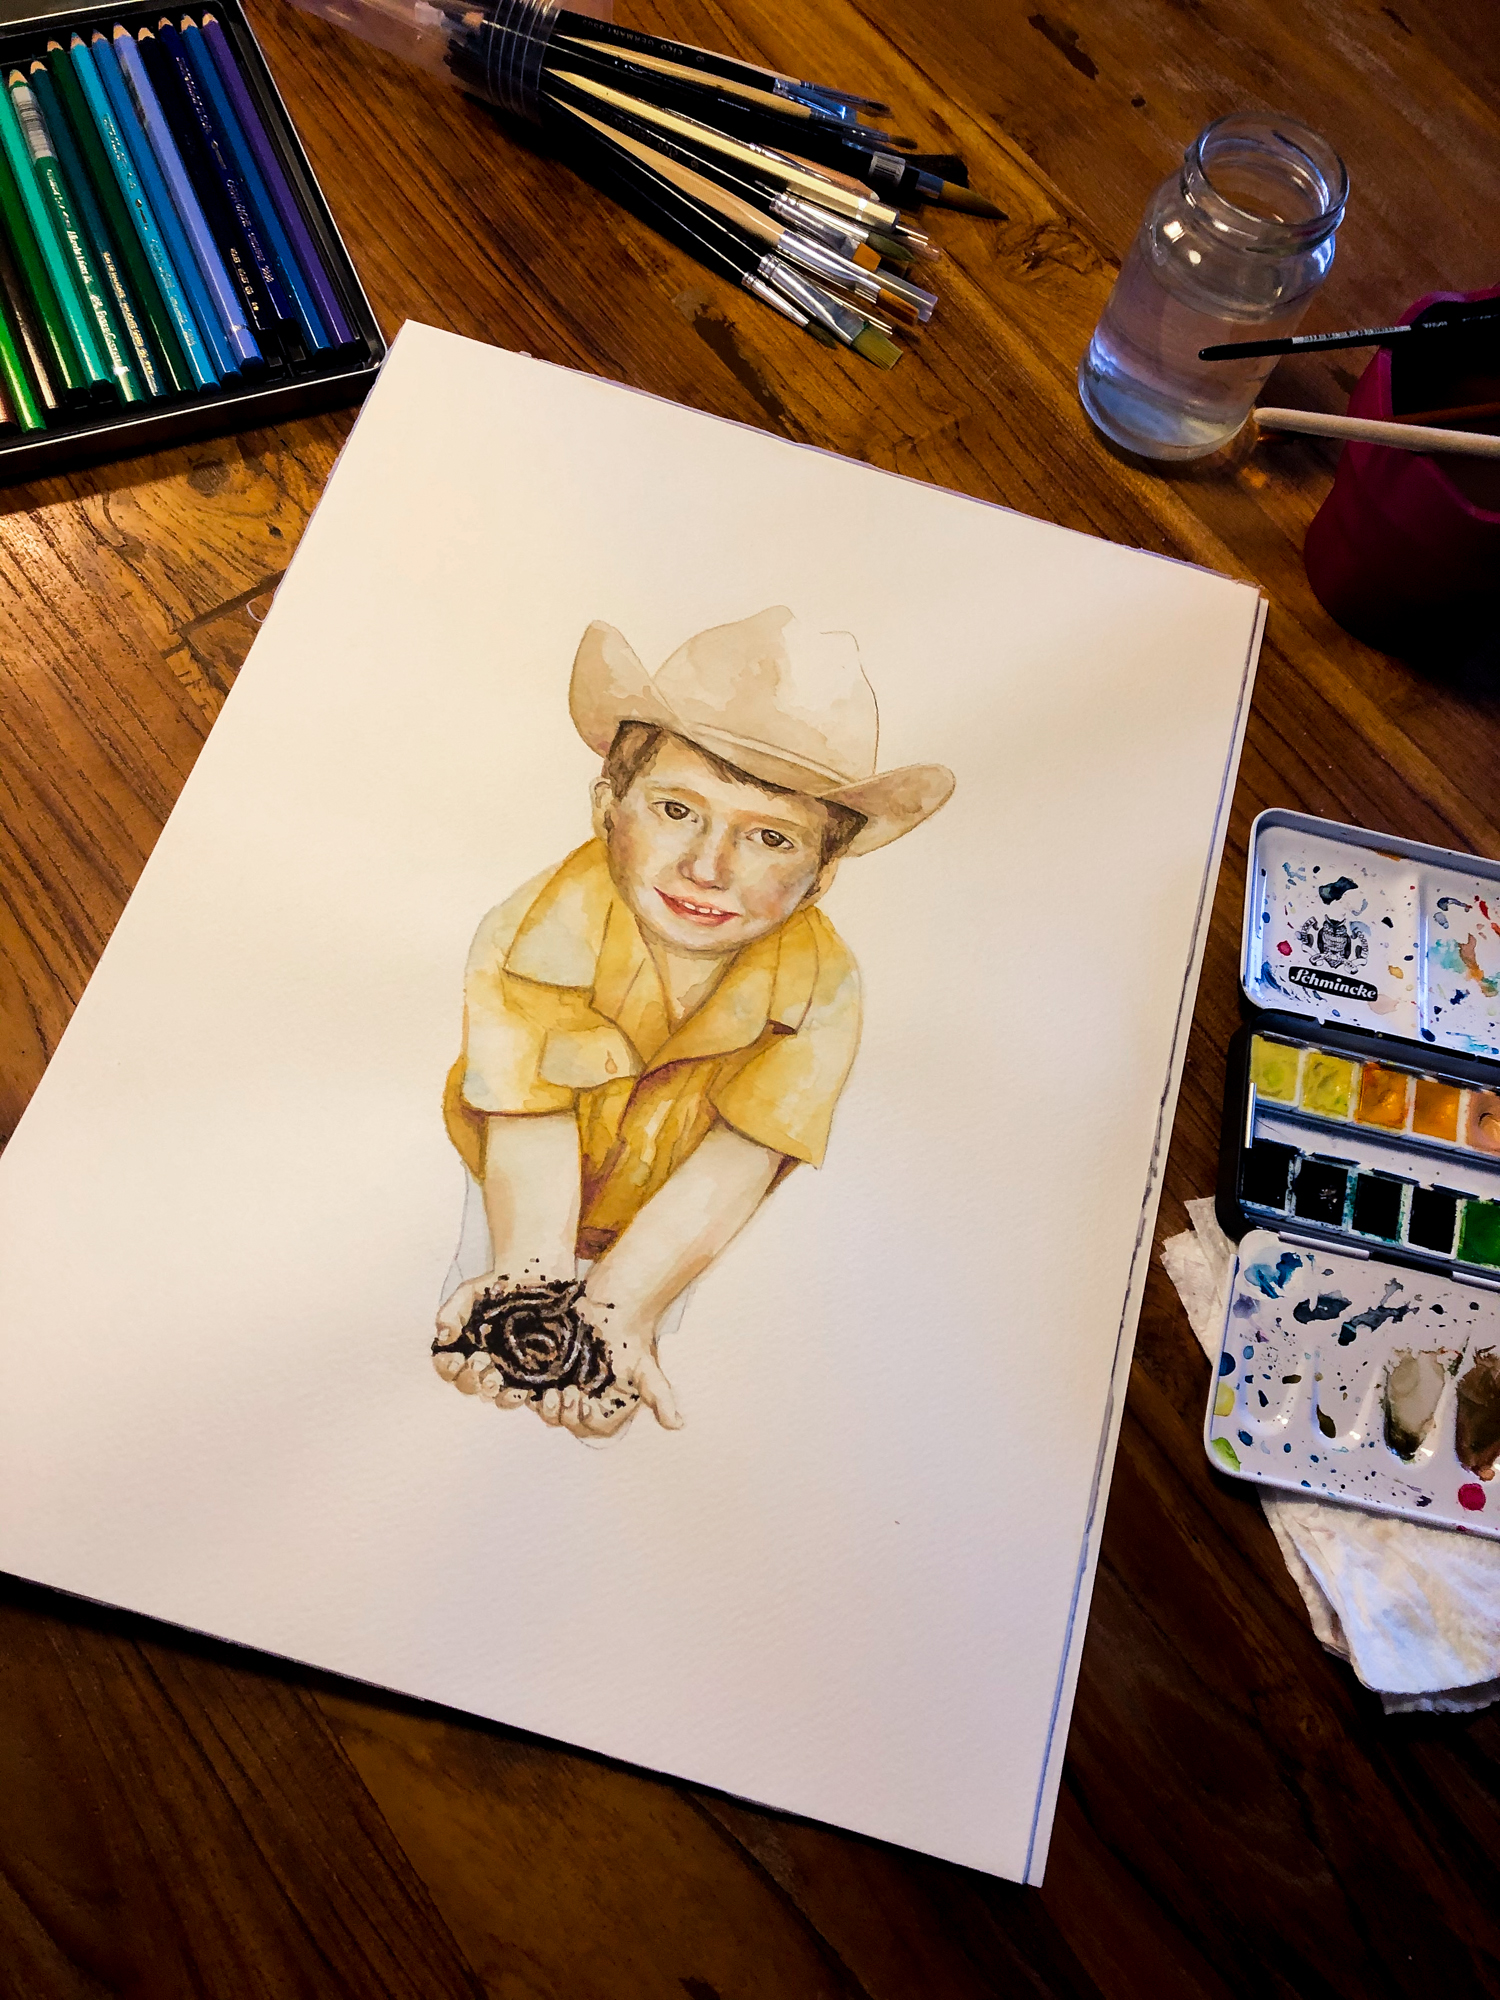 Zu sehen ist ein Aquarell-Porträt eines kleinenJungen mit Cowboyhut und gelben Hemd. Erhält Regenwürmer in den Händen und guckt den Betrachter direkt an.